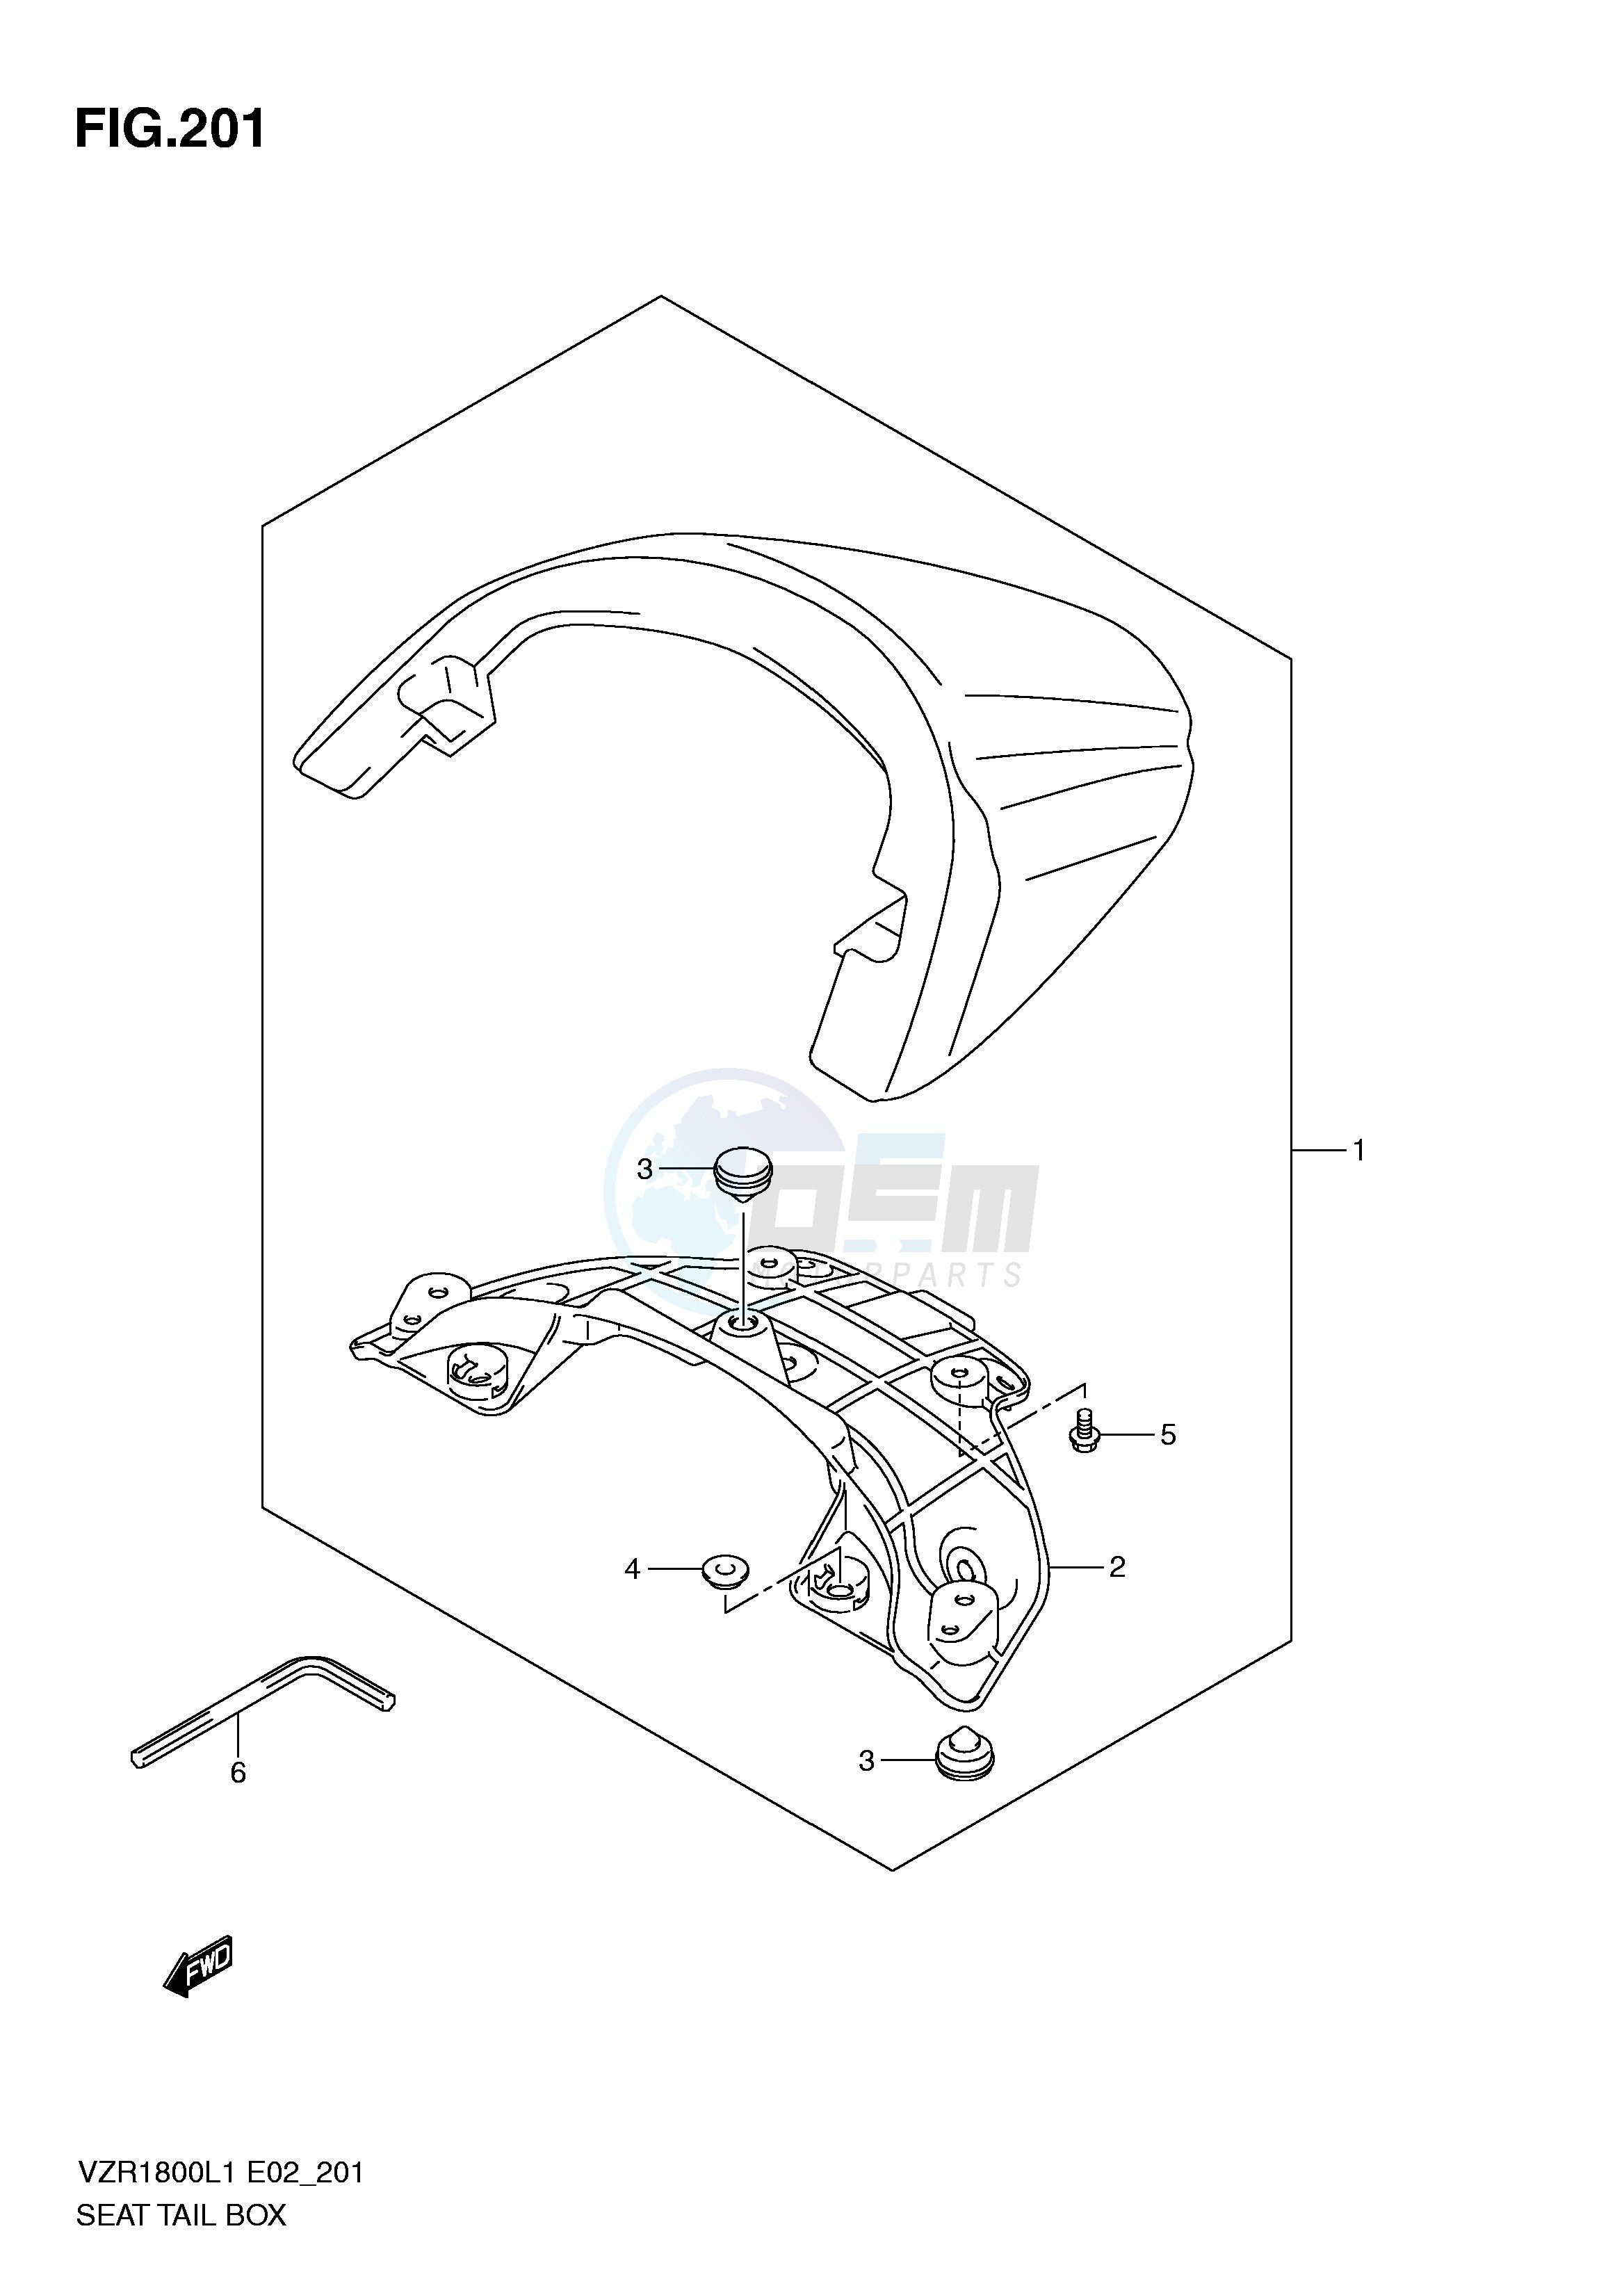 SEAT TAIL BOX (VZR1800L1 E2) blueprint